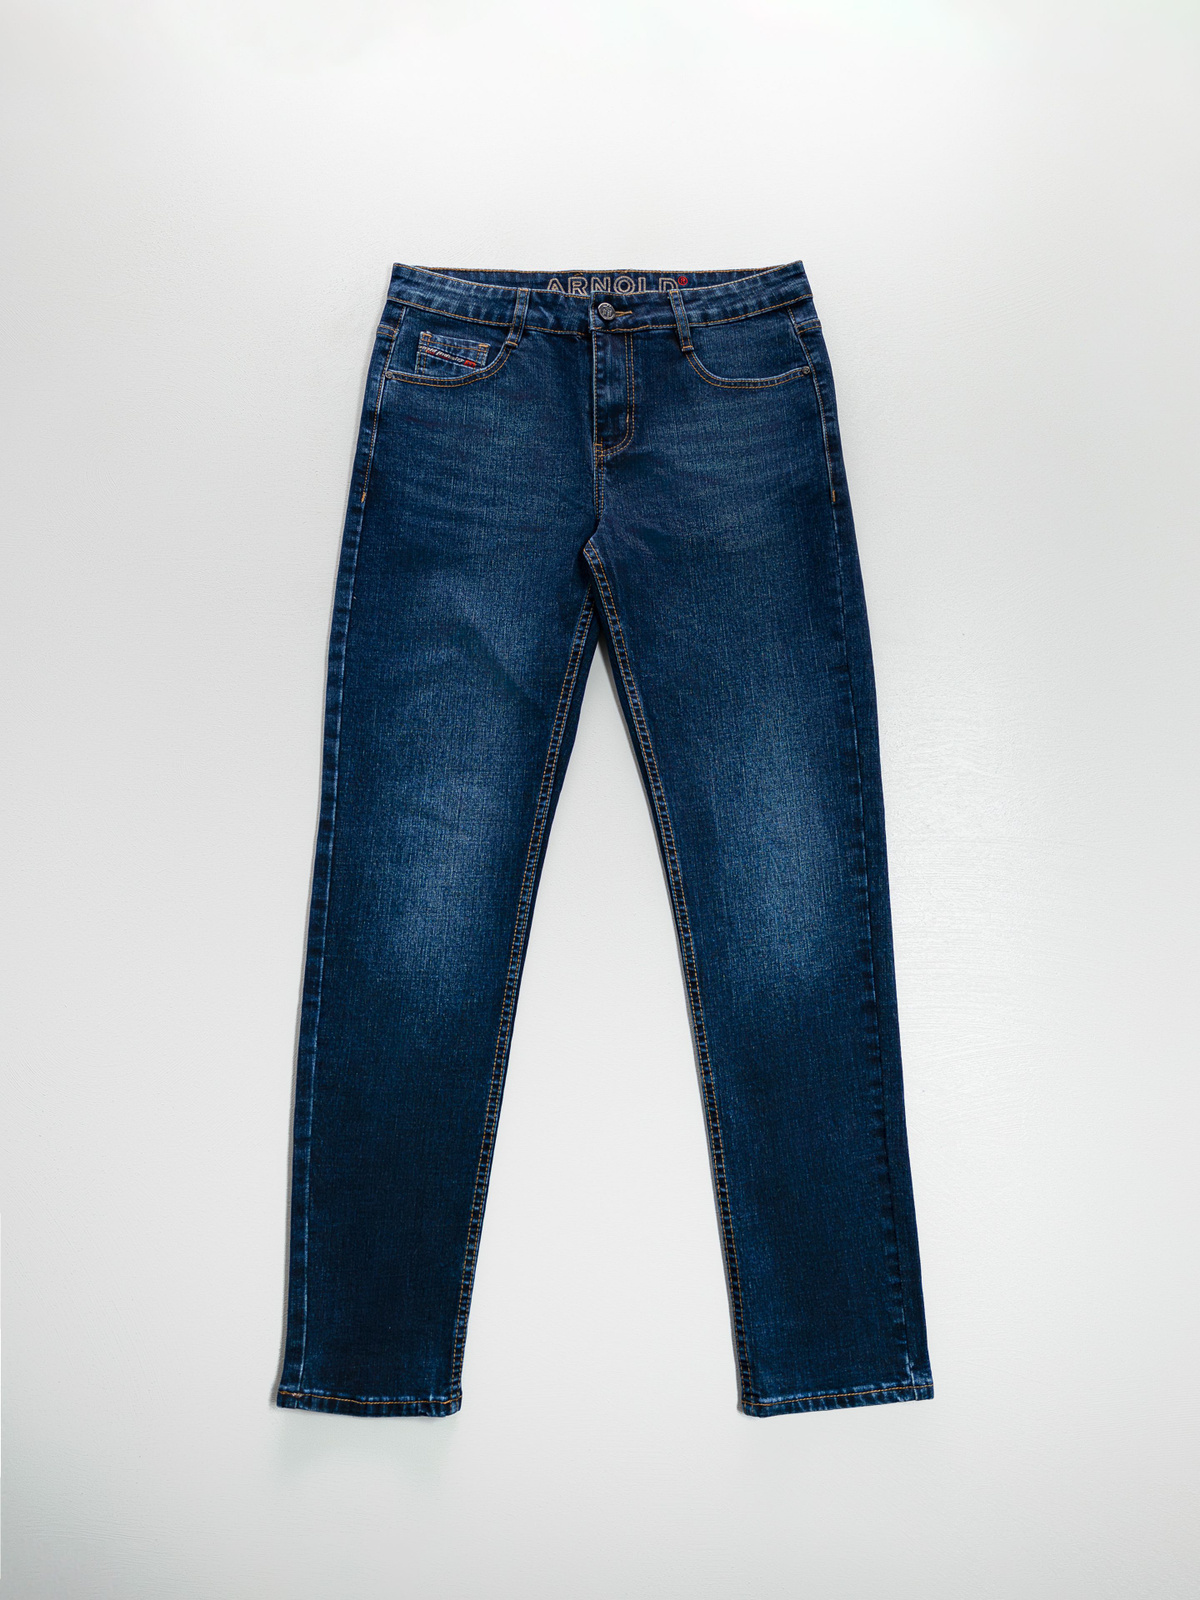 Базовые джинсы классика, коллекции arnold  - это идеальный выбор для всех, кто ценит комфорт и стиль в одежде. Плотные джинсы из денима станут отличным подарком на 23 февраля, новый год, день рождения, любимому мужу папе сыну.